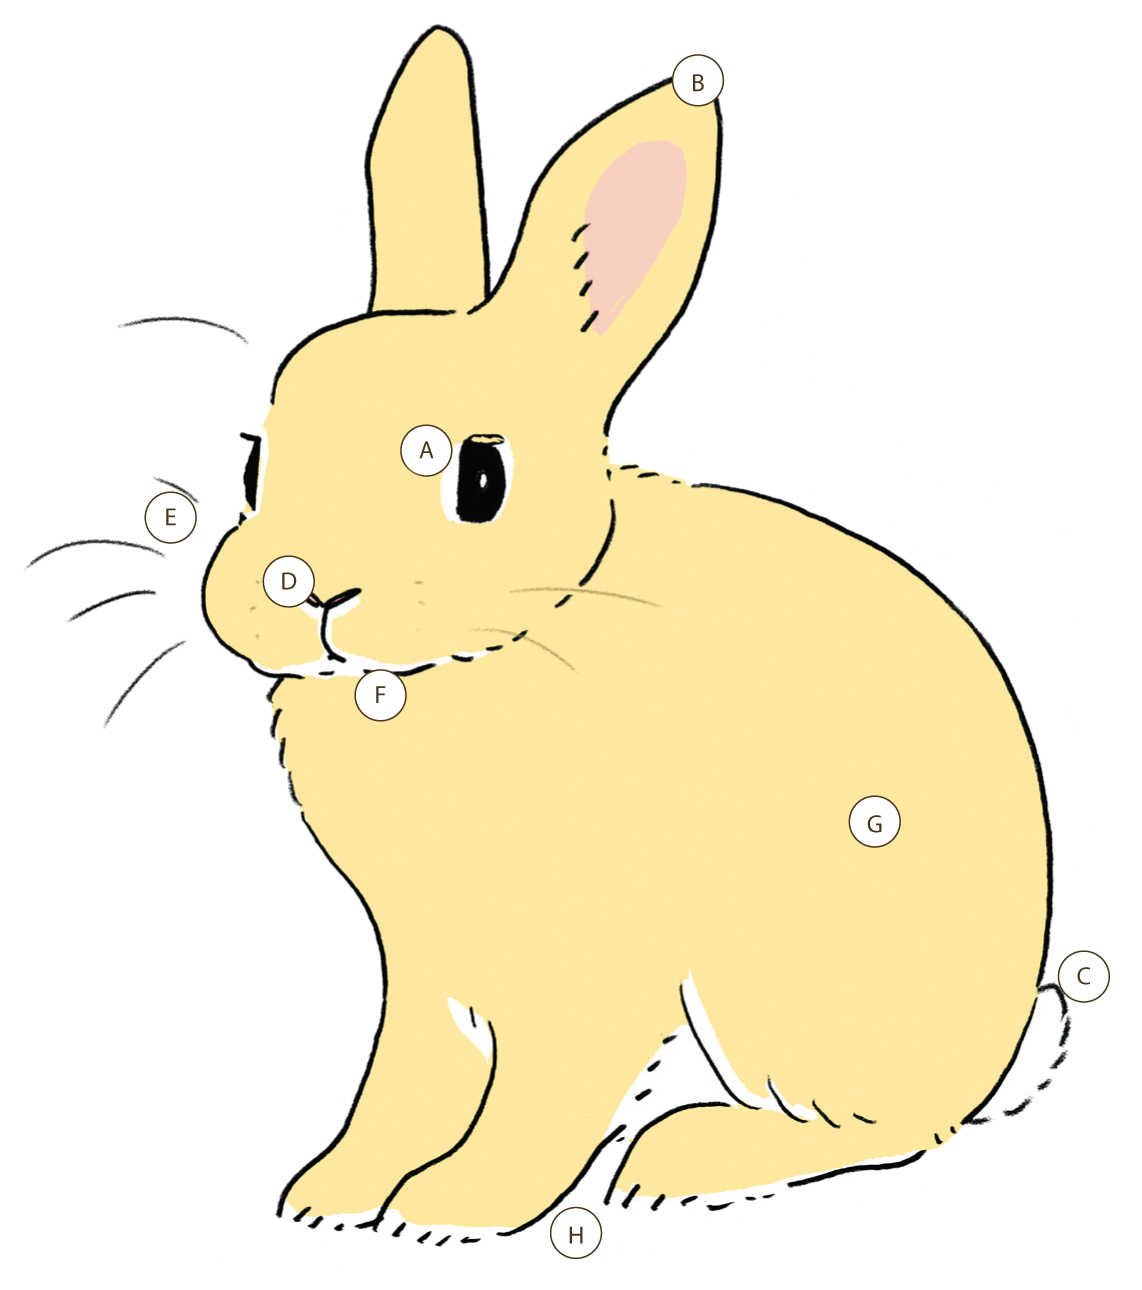 兔子始祖的歐洲穴兔體重約為1.5～2.5公斤，目前常見的寵物兔已經被改良成更小或更大的體型。各部位的詳細介紹標示如下方文字。（圖片來源：遠流提供）